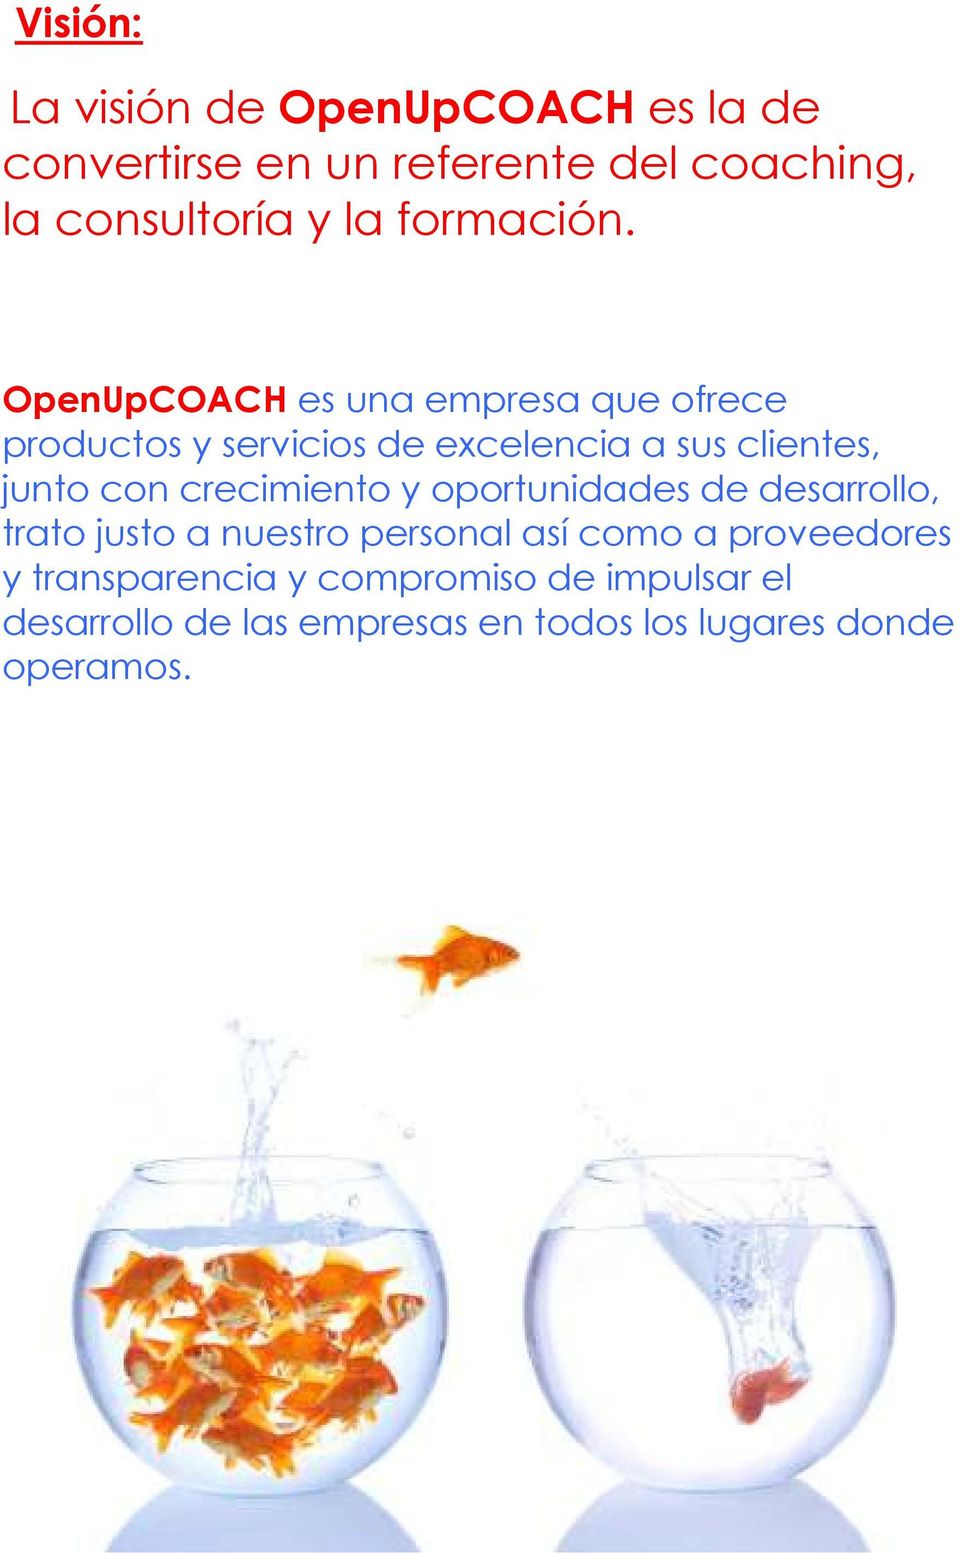 OpenUpCOACH es una empresa que ofrece productos y servicios de excelencia a sus clientes, junto con